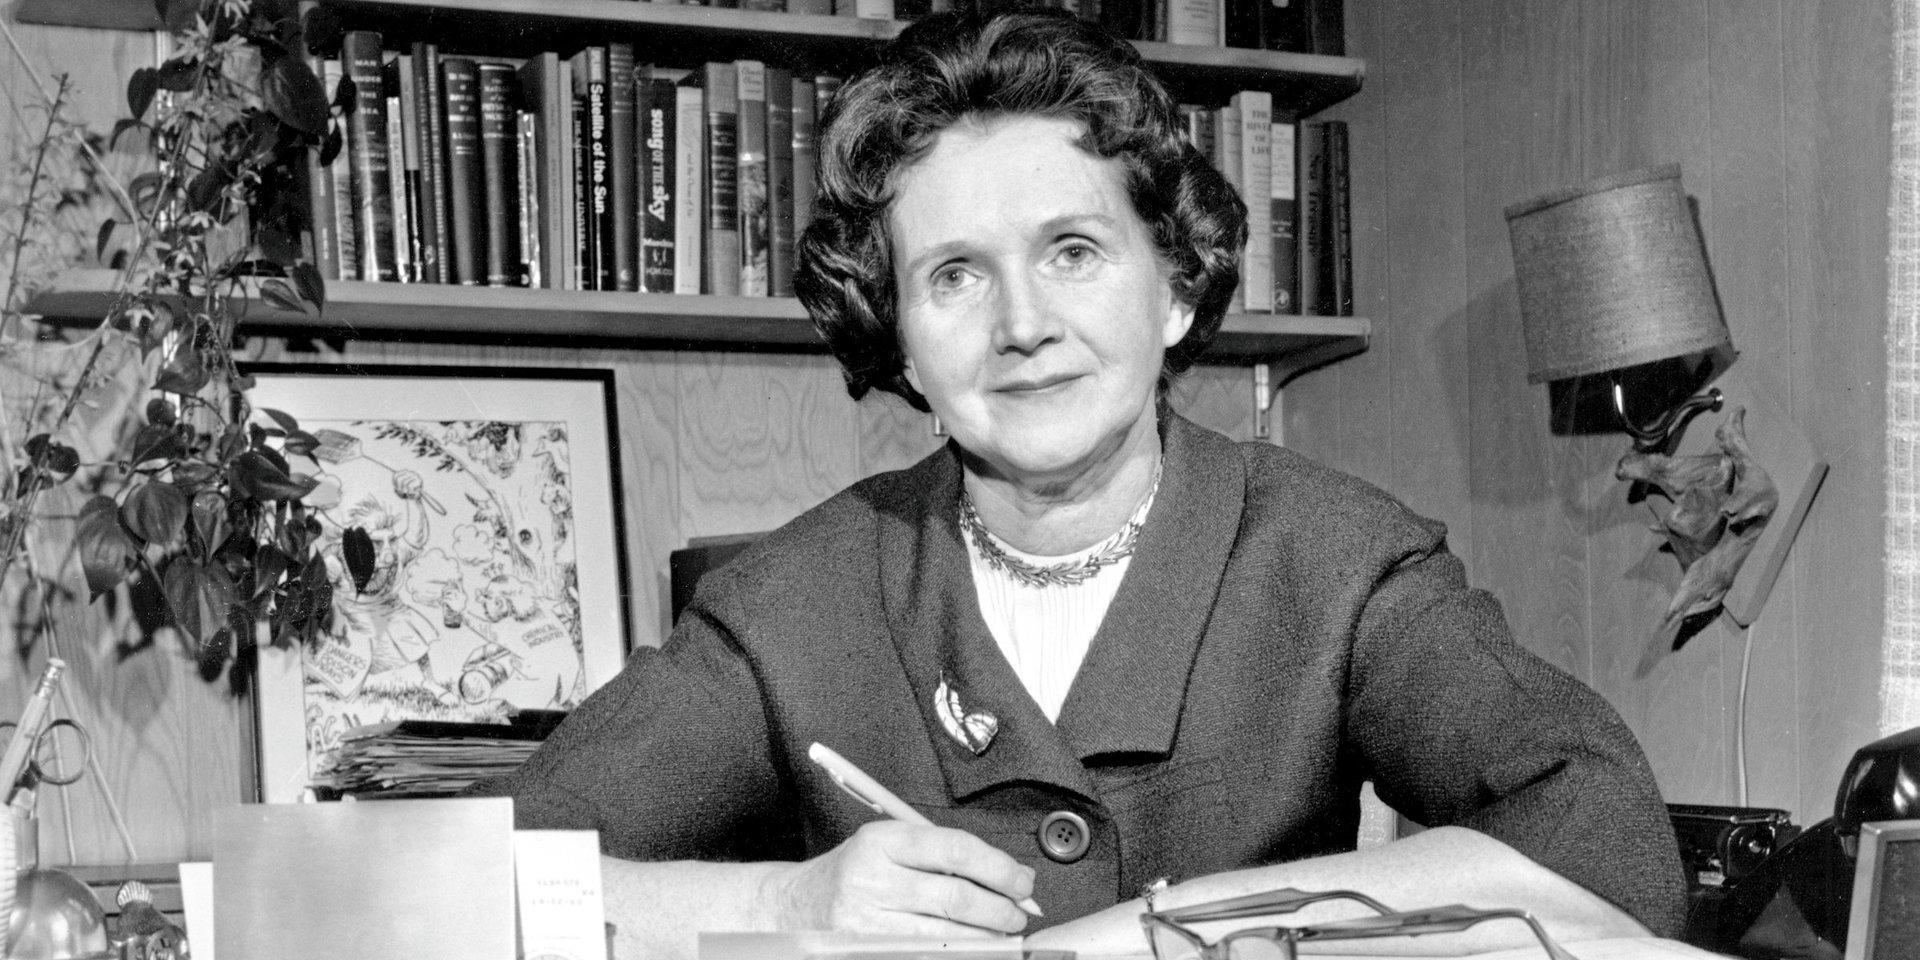 Rachel Carson som skrev boken ”Tyst vår” kom att bli en av den moderna miljörörelsens förgrundsgestalter i början av 1960-talet.